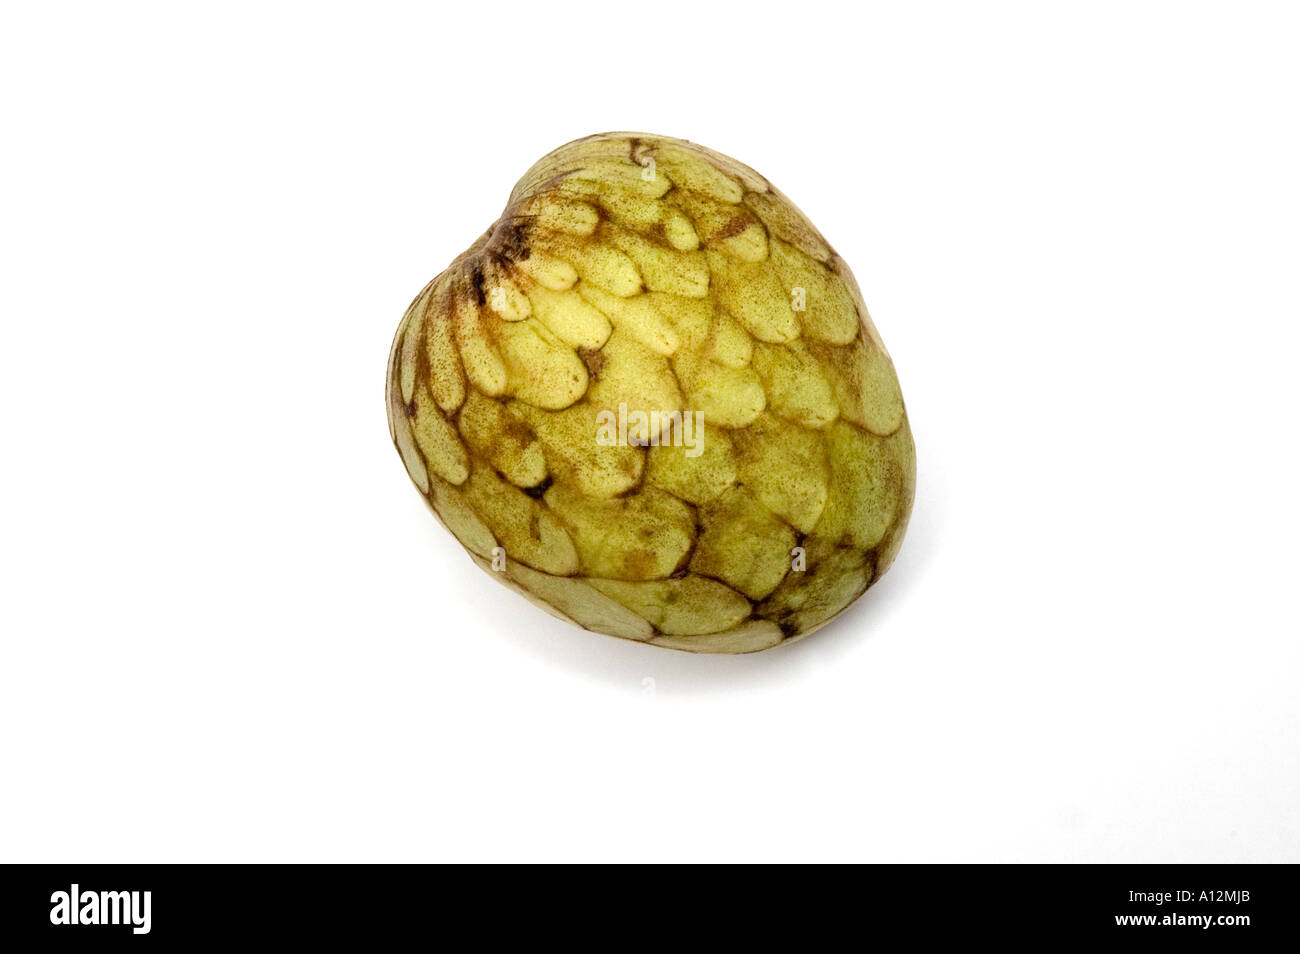 Annona reticulata la chirimoya una fruta tropical de West Indies con carne comestible de recubrimiento de semillas es difícil si las semillas son ingeridos Foto de stock